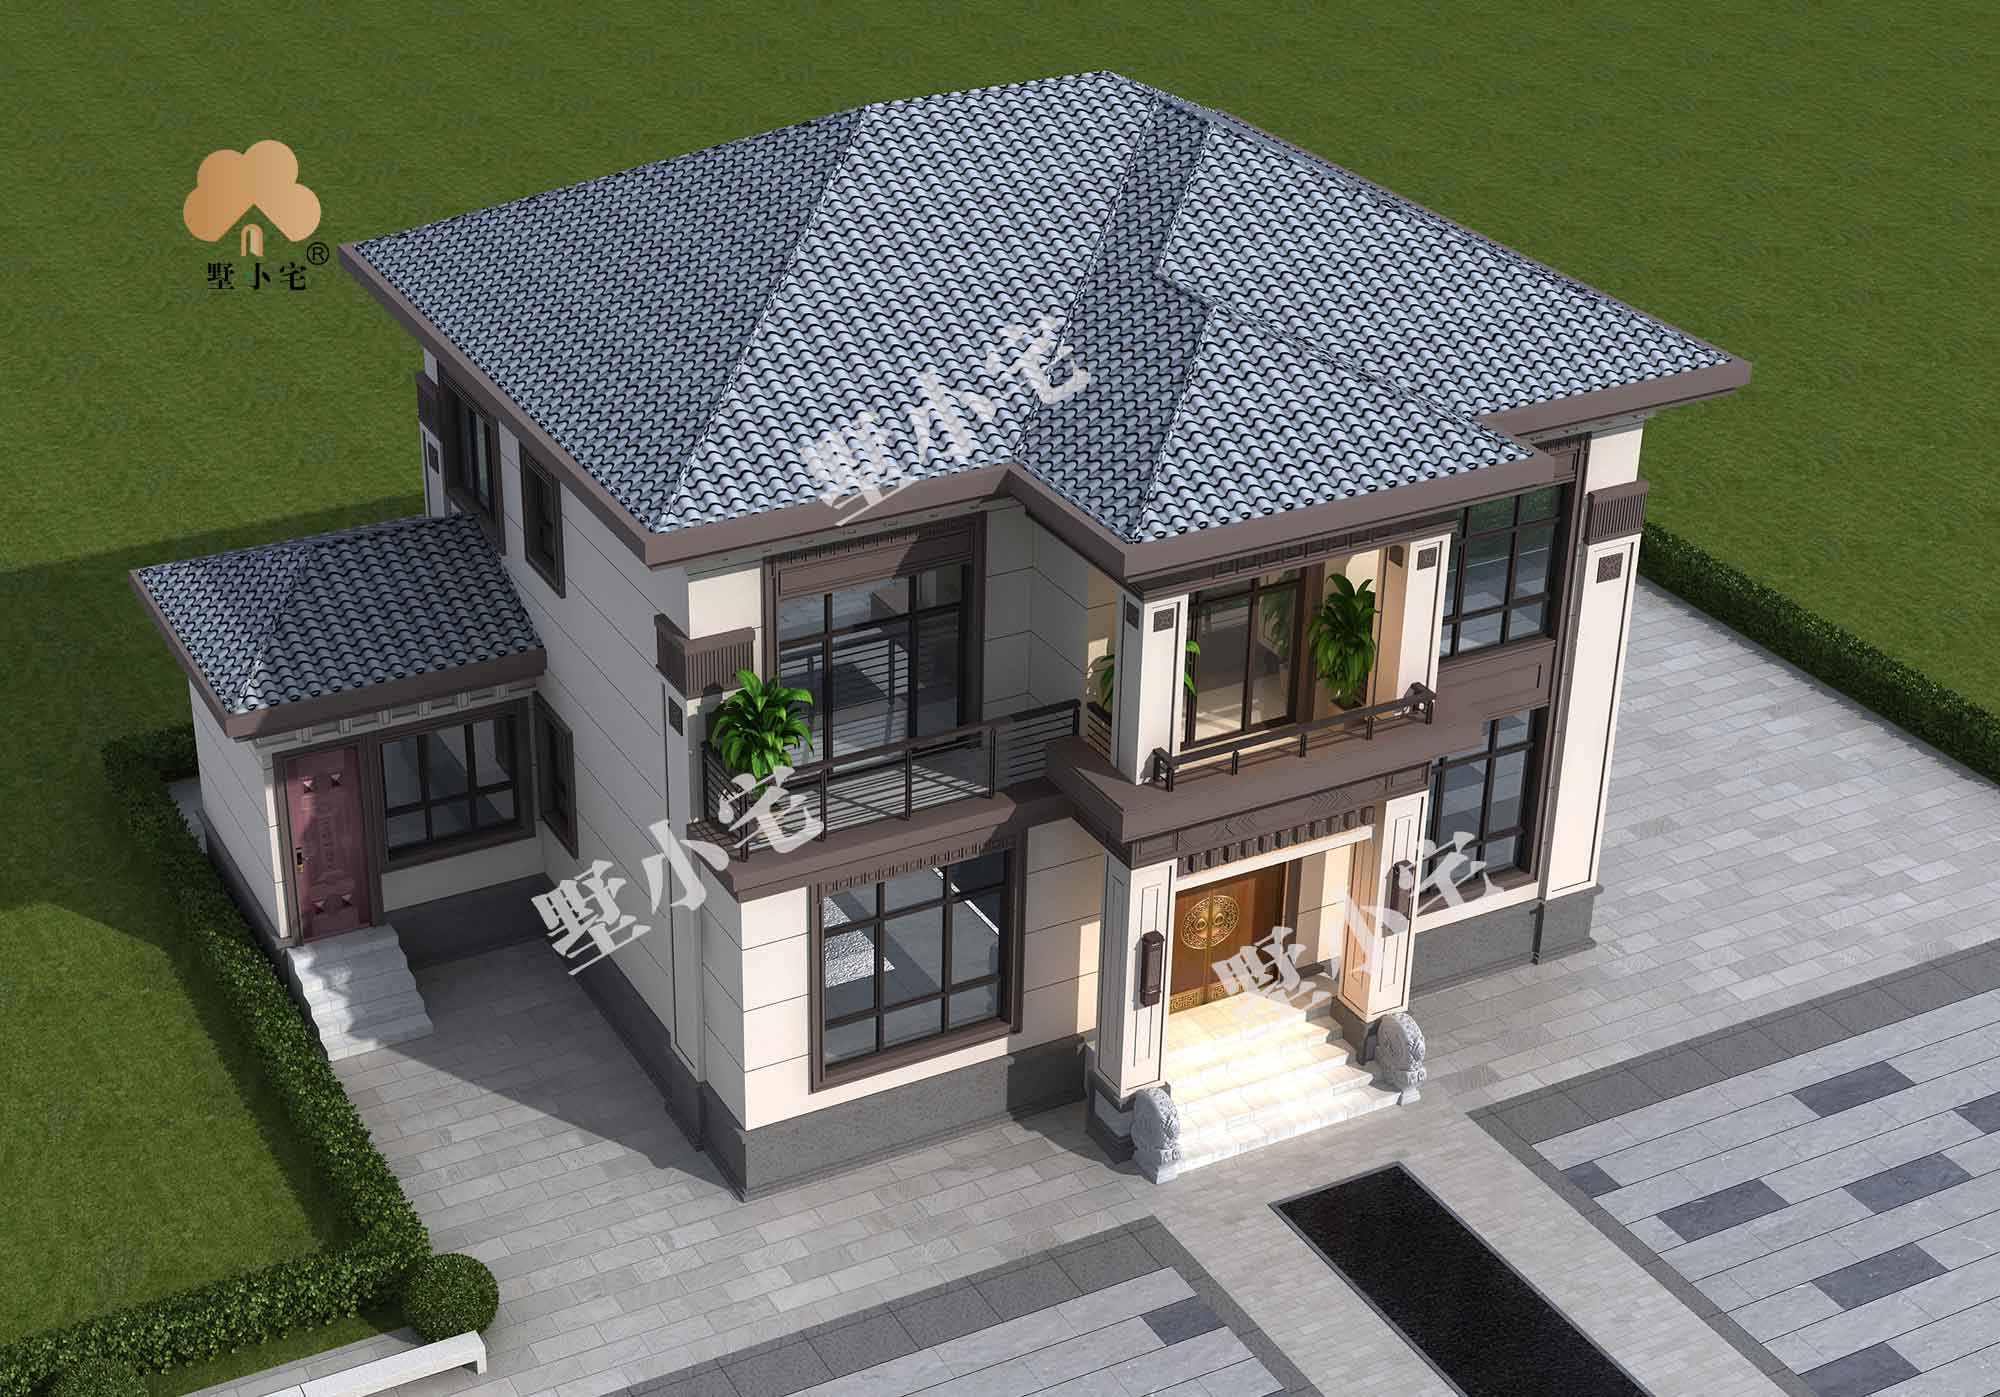 B593【新农村住宅】两层新中式带阳台附属房经济型小别墅